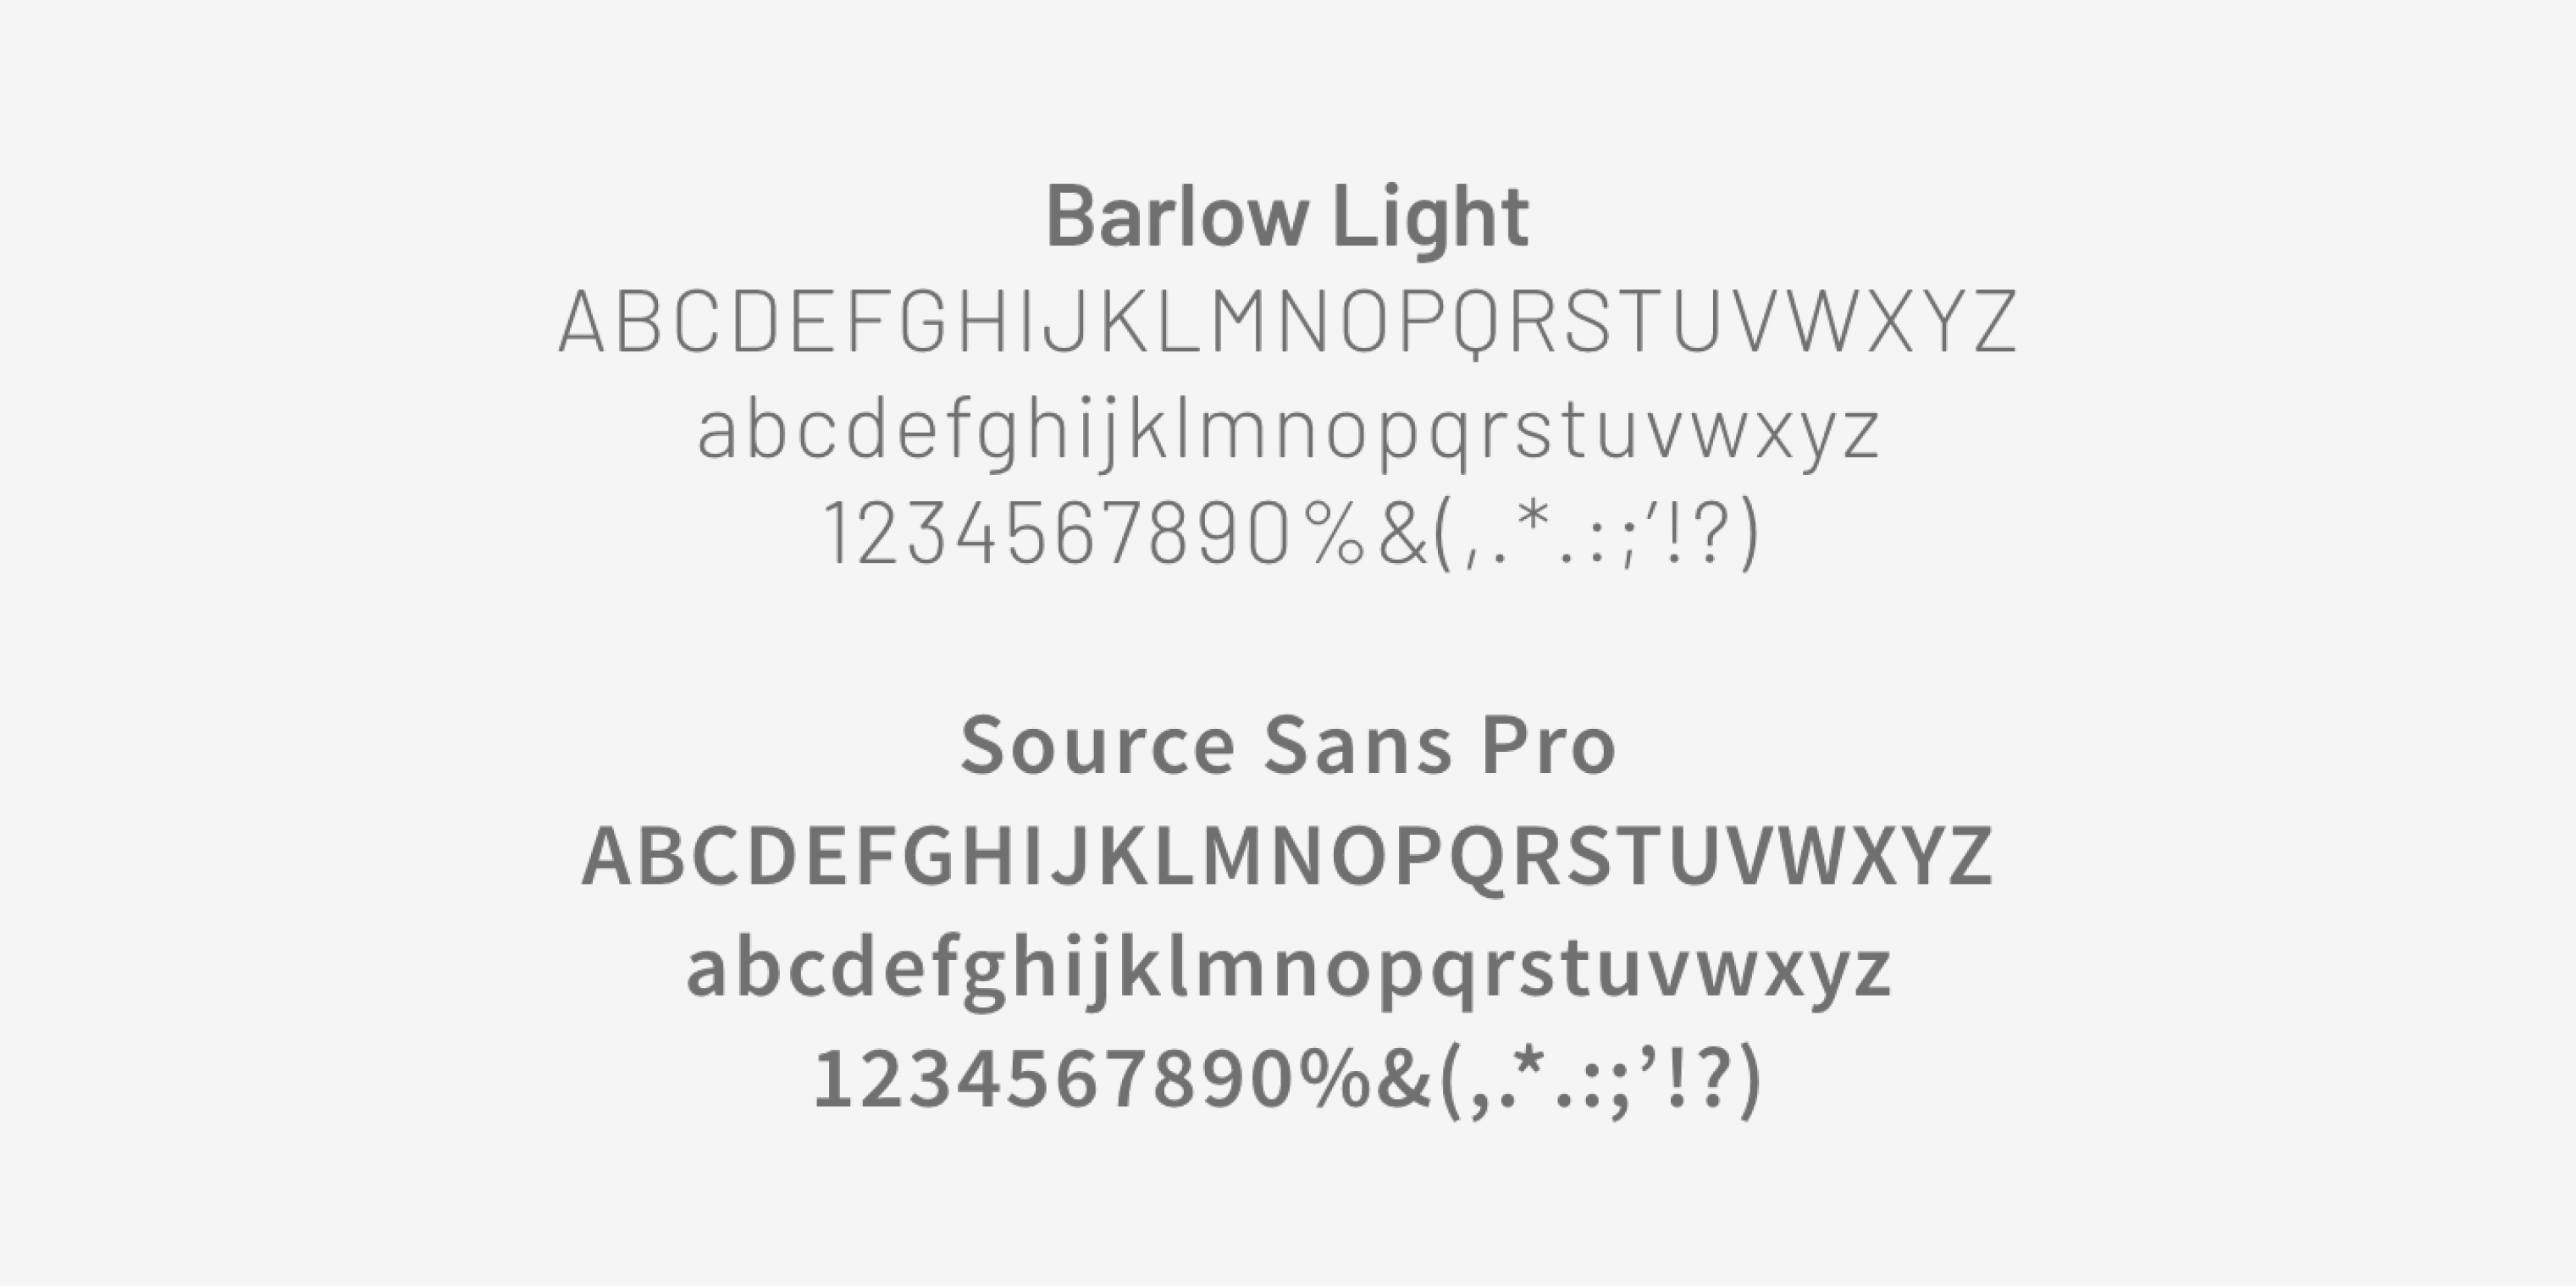 Die Logoschrift für Culinary Pixel - die fonts Source Sans Pro und Barlow light